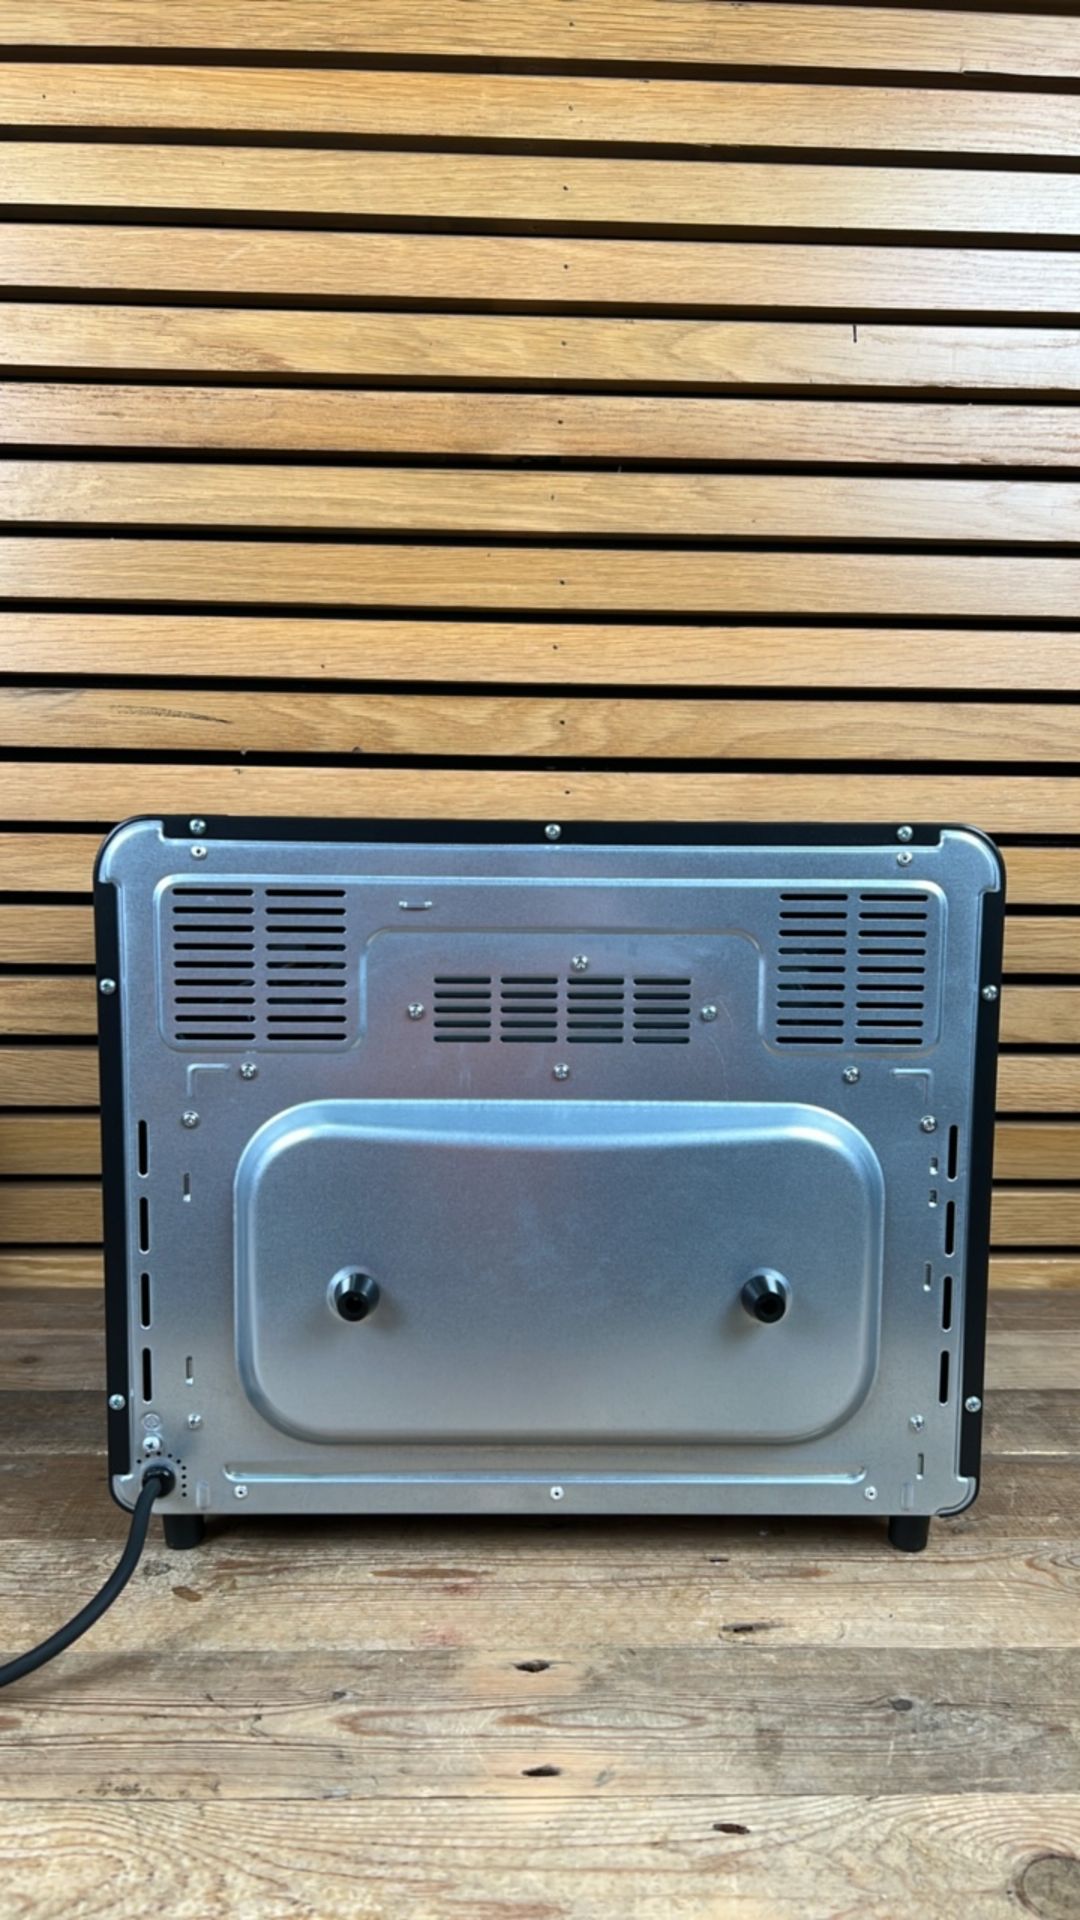 EGL 20 Litre Air Fryer Oven - Image 4 of 8